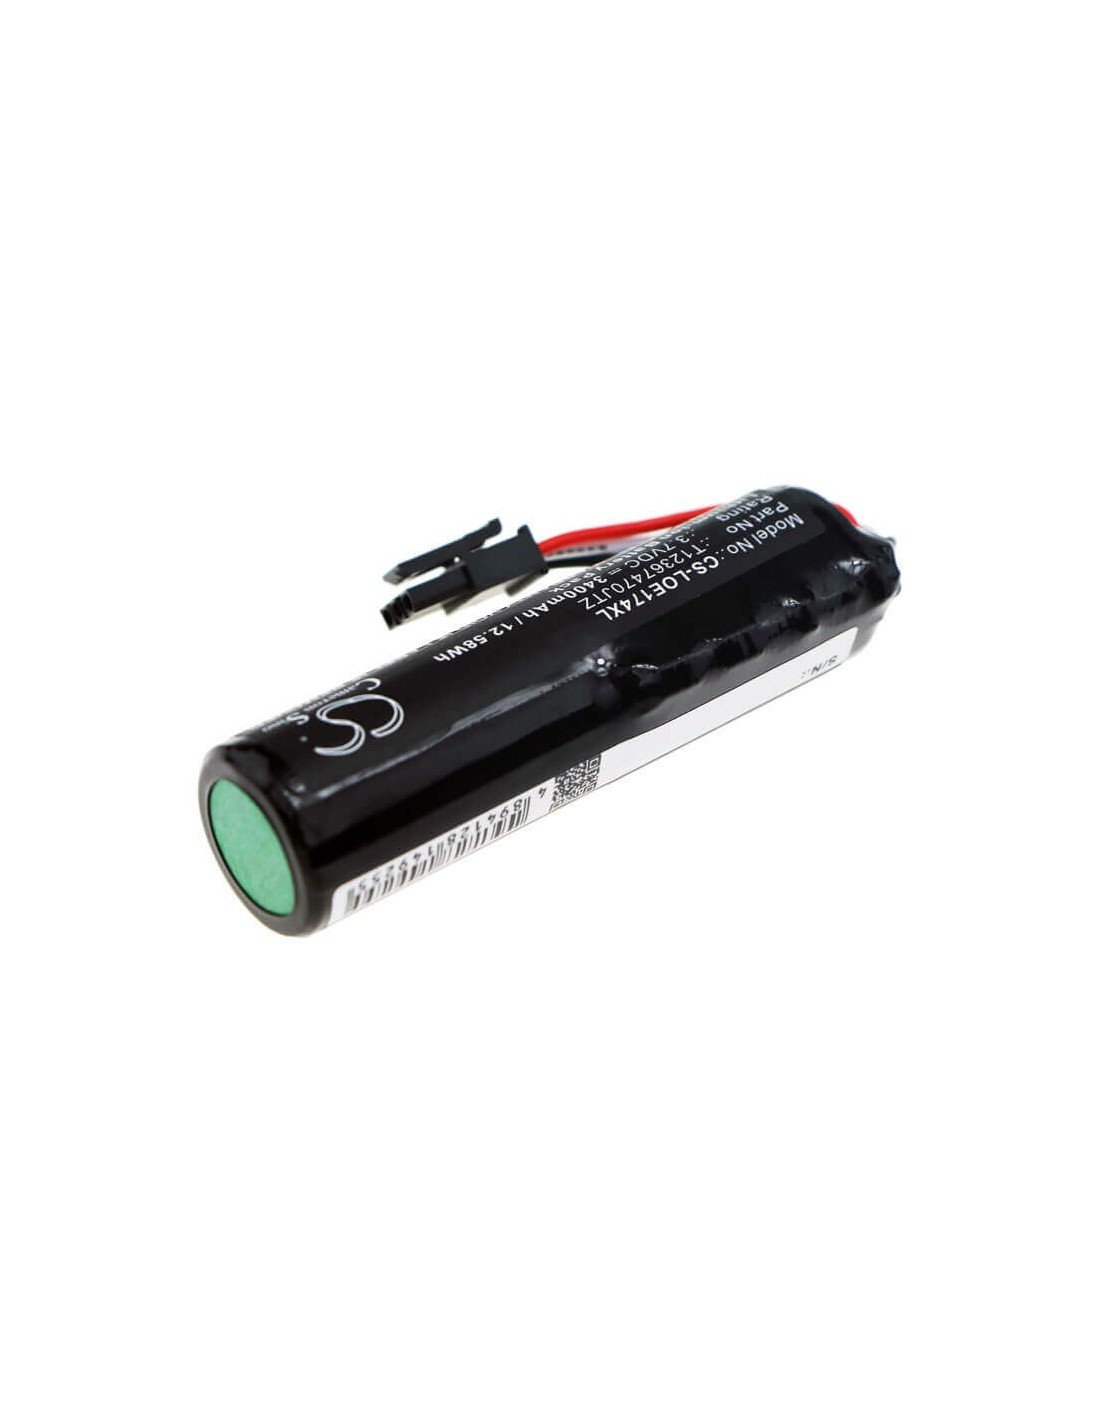 Battery for Logitech, 1749lz0psas8, 884-000741, 984-000967 3.7V, 3400mAh - 12.58Wh